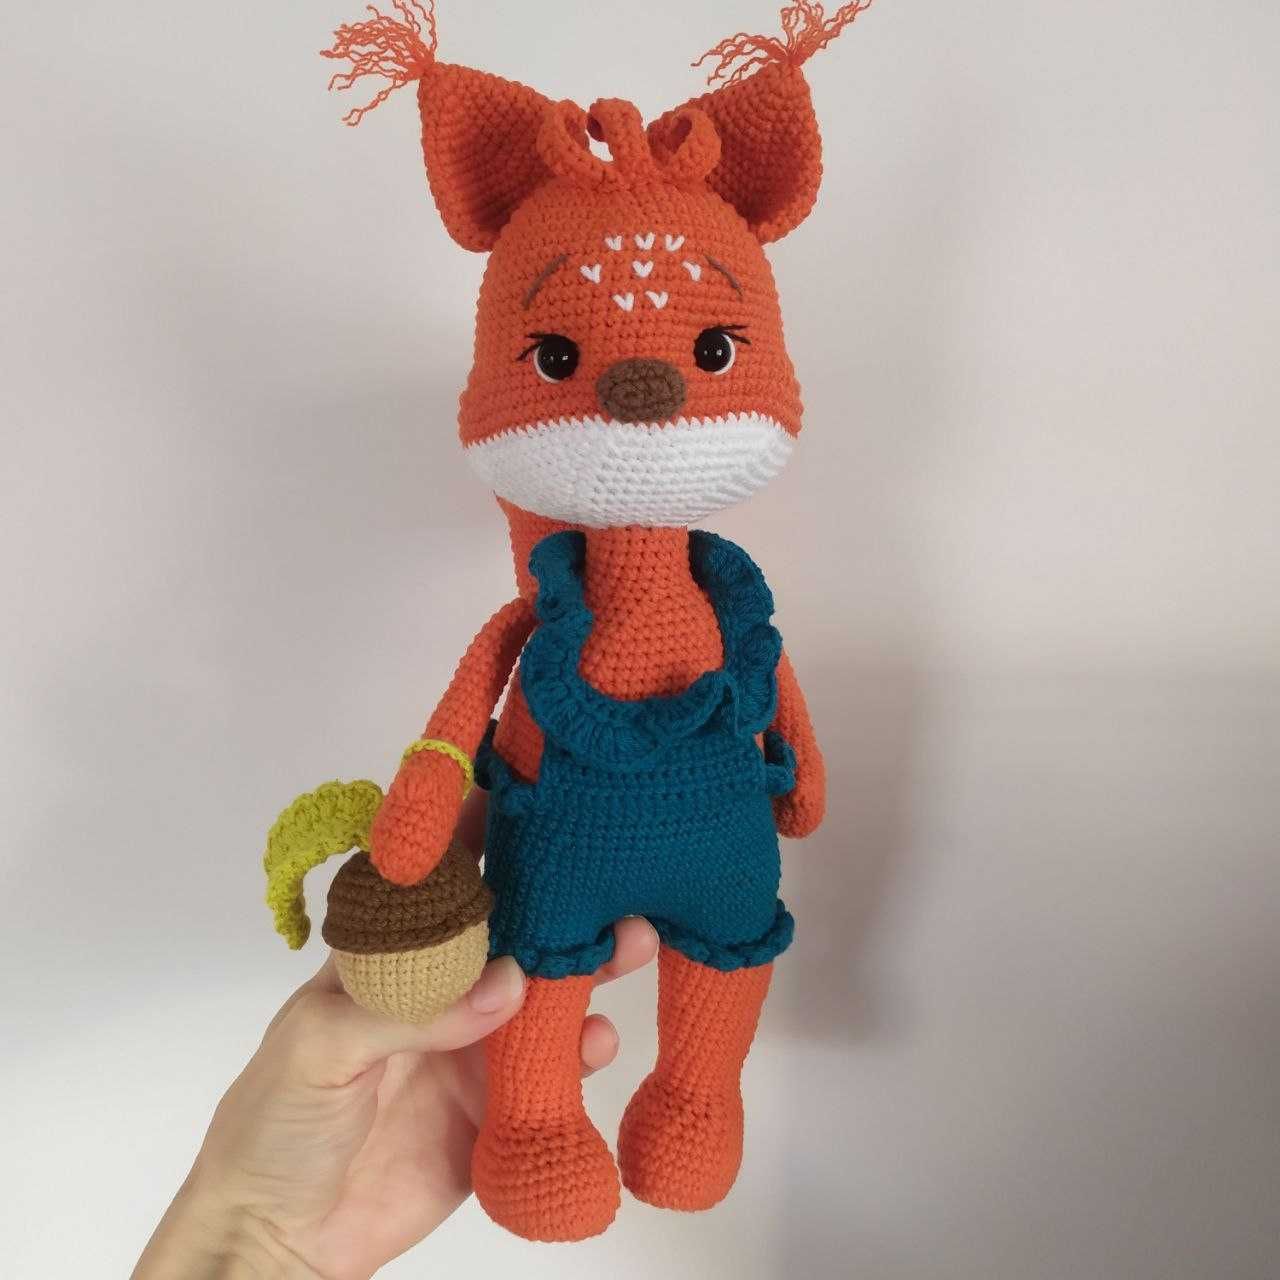 Zabawka Amigurumi Wiewiórka Handmade na szydełku